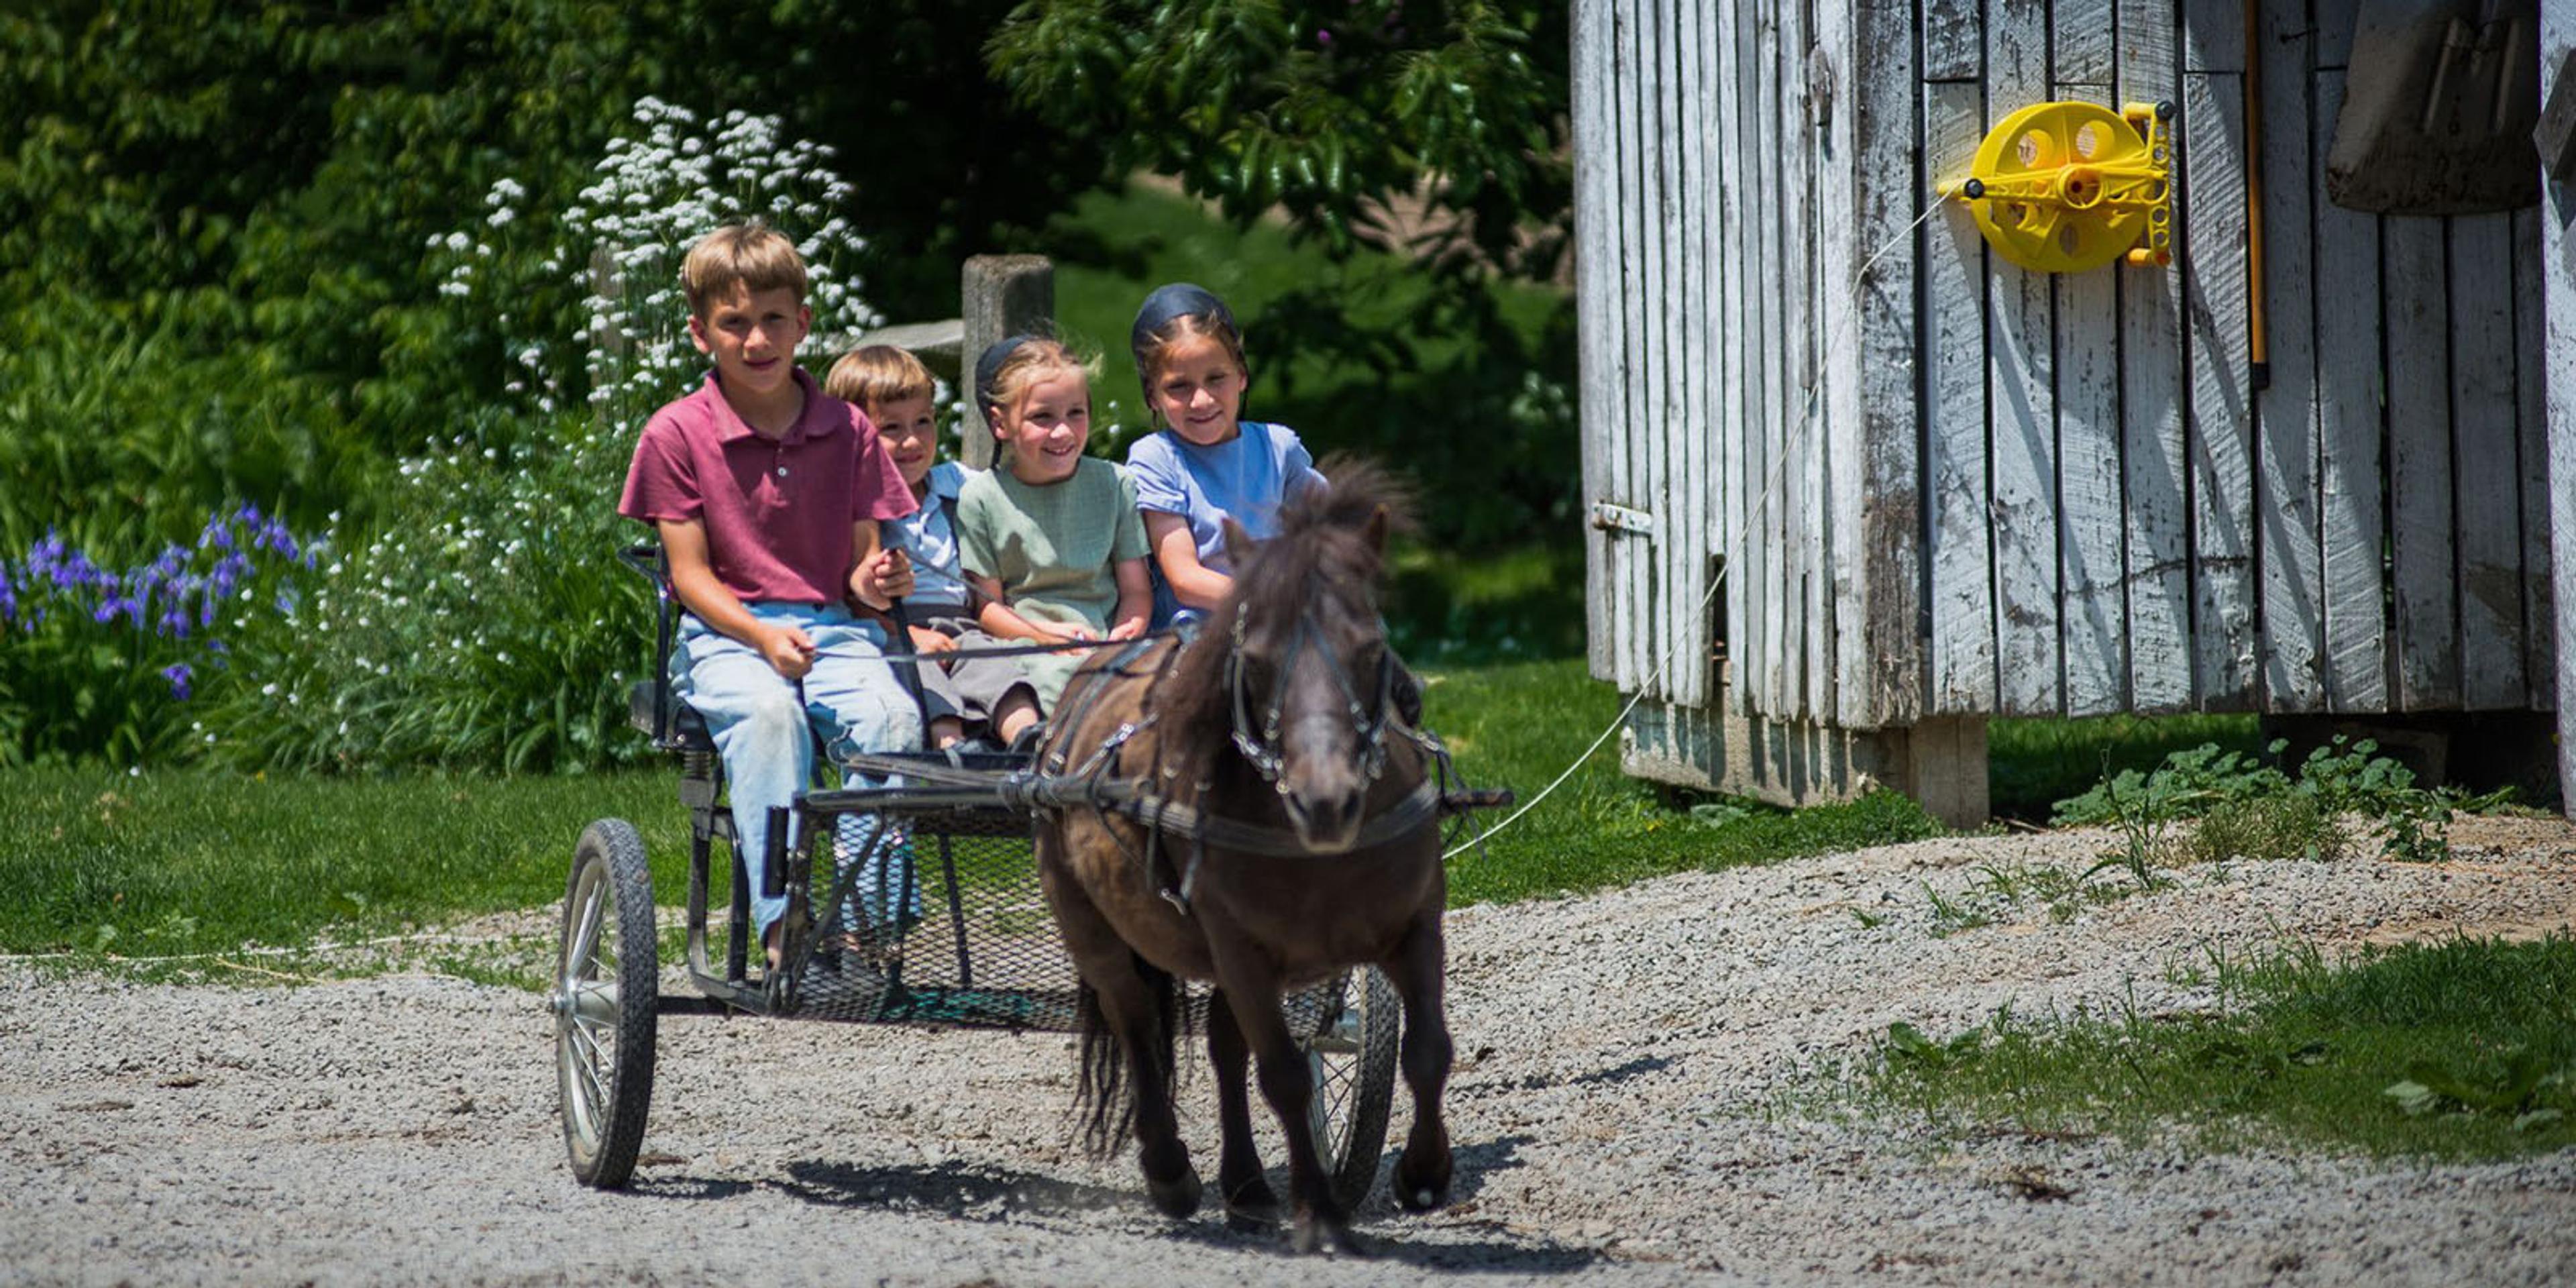 A miniature horse pulls children in a cart.